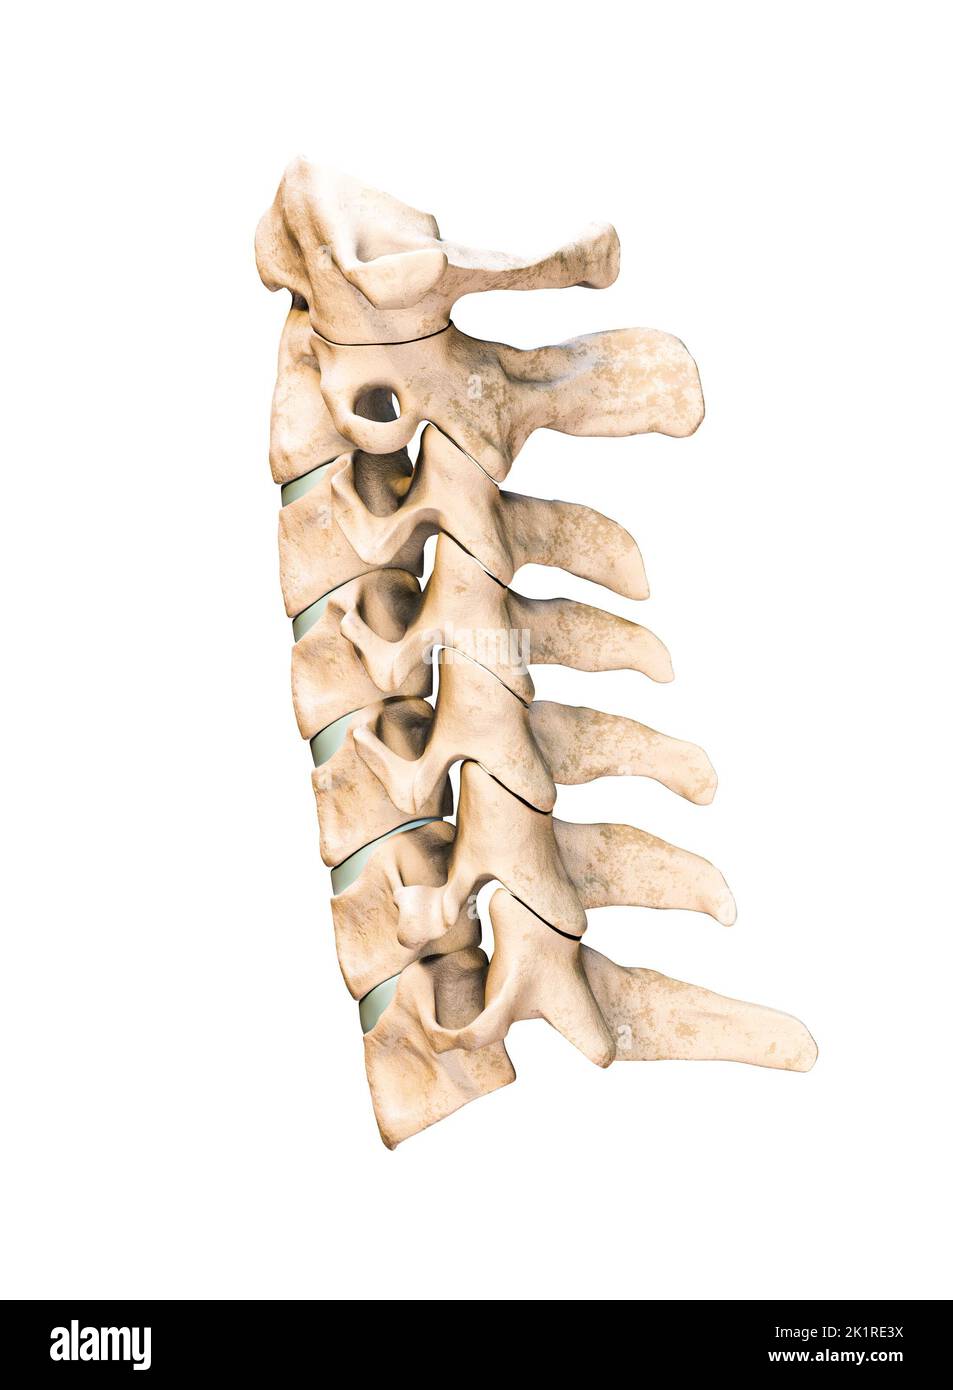 Vista lateral o de perfil de las siete vértebras cervicales humanas aisladas sobre fondo blanco 3D ilustración de representación. Anatomía, osteología, medicina en blanco Foto de stock